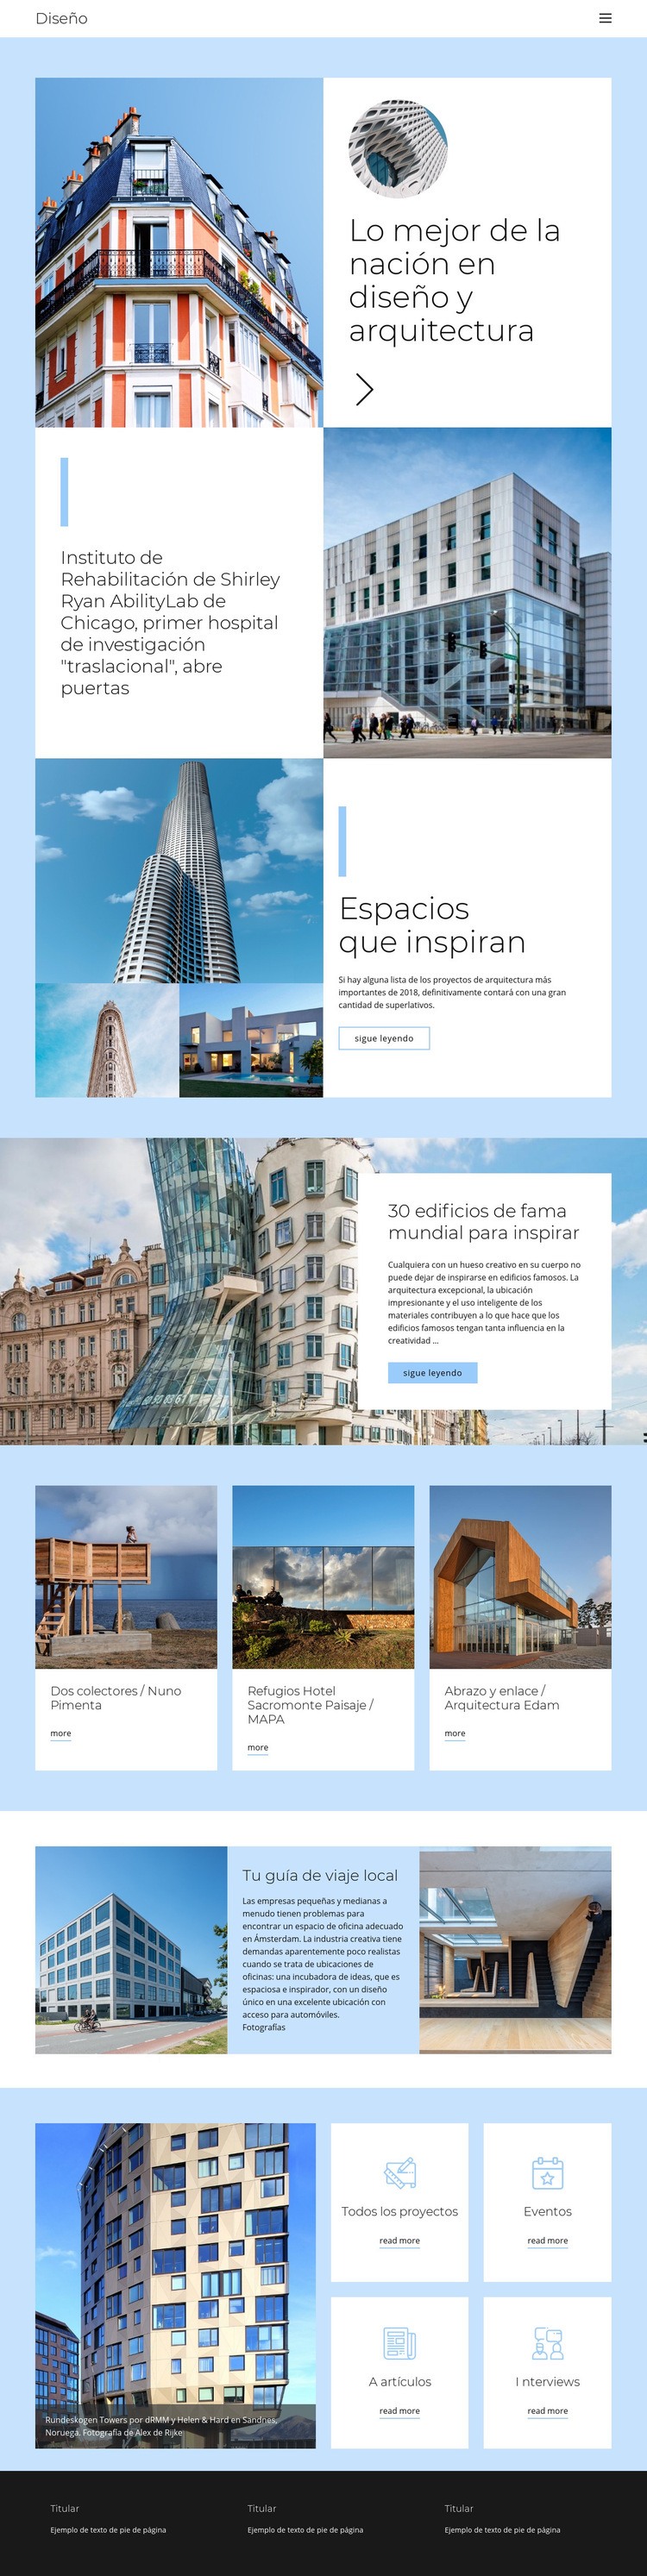 Guía de arquitectura de la ciudad Plantillas de creación de sitios web